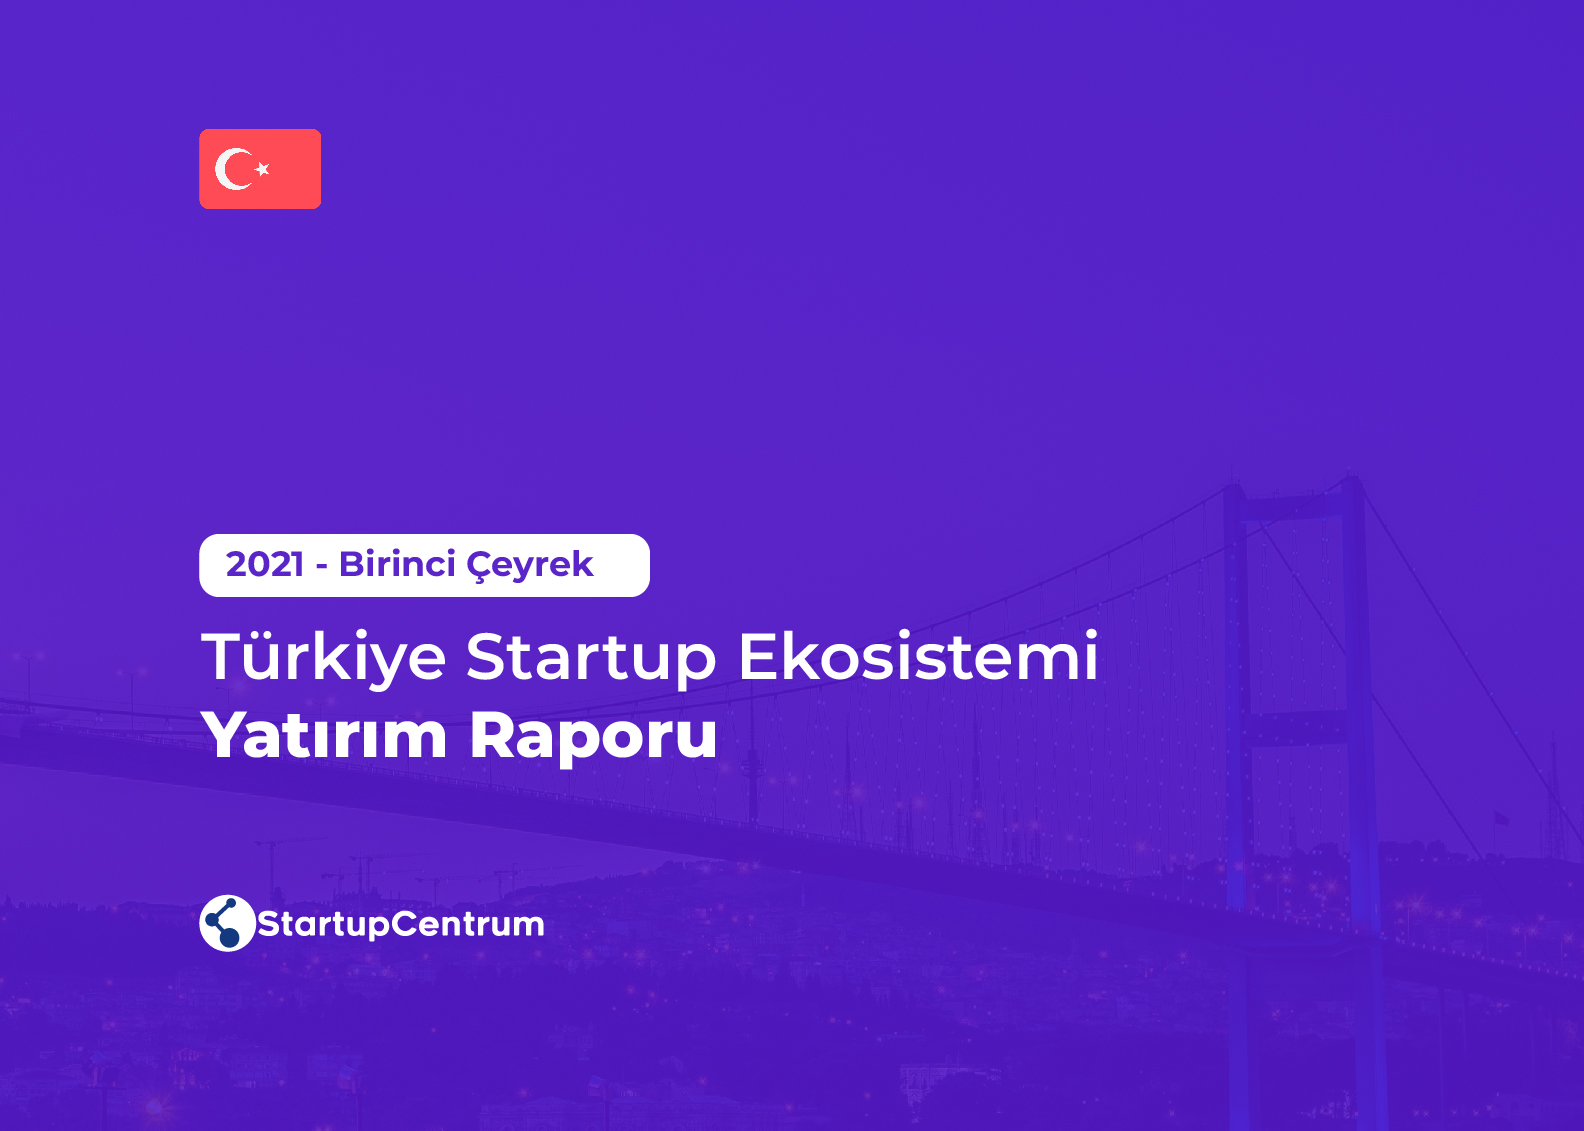 2021 Birinci Çeyrek - Türkiye Startup Ekosistemi Yatırım Raporu Cover Image